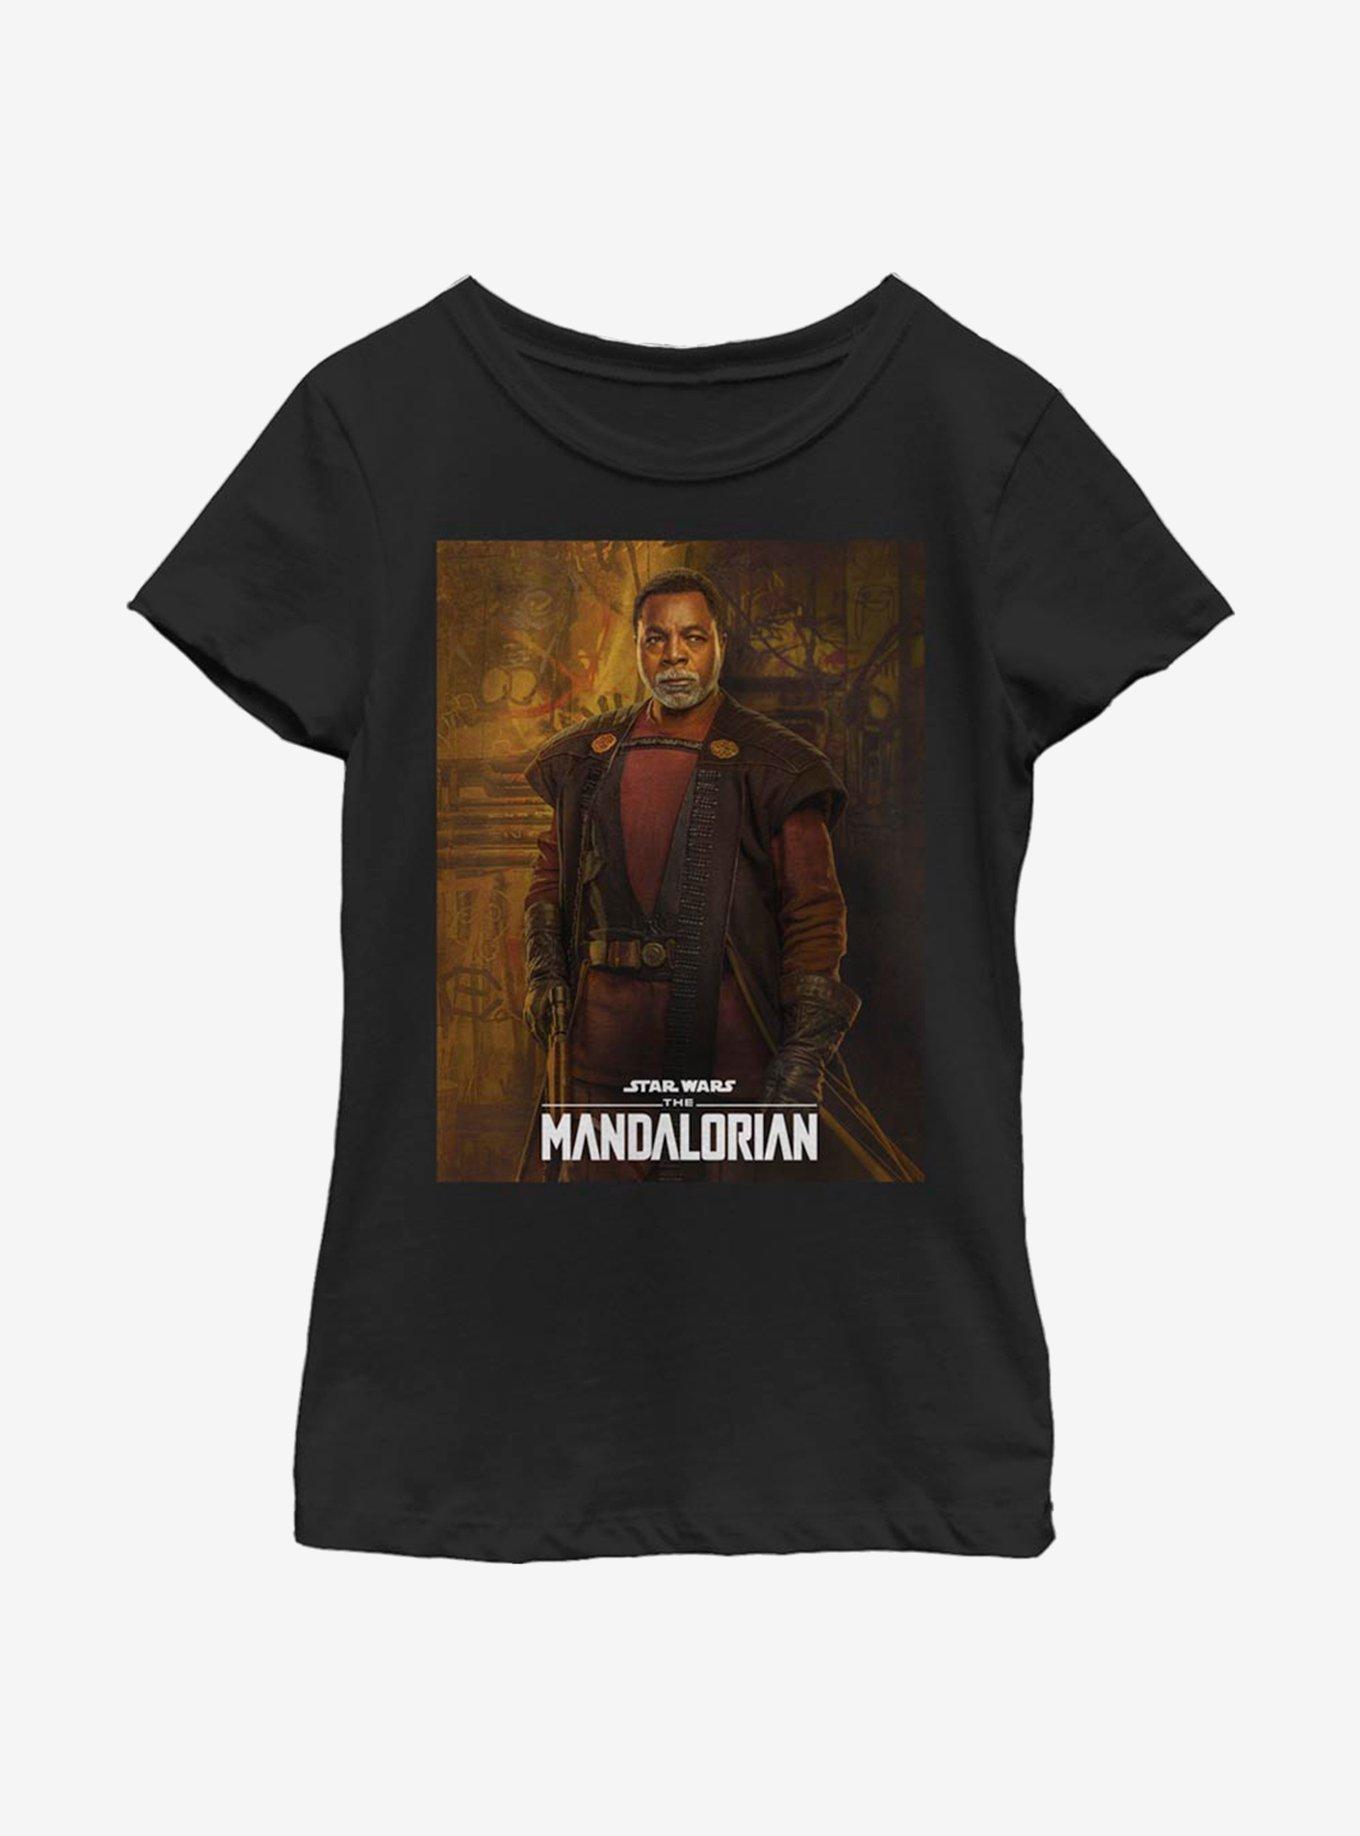 Star Wars The Mandalorian Greef Karga Poster Youth Girls T-Shirt, BLACK, hi-res